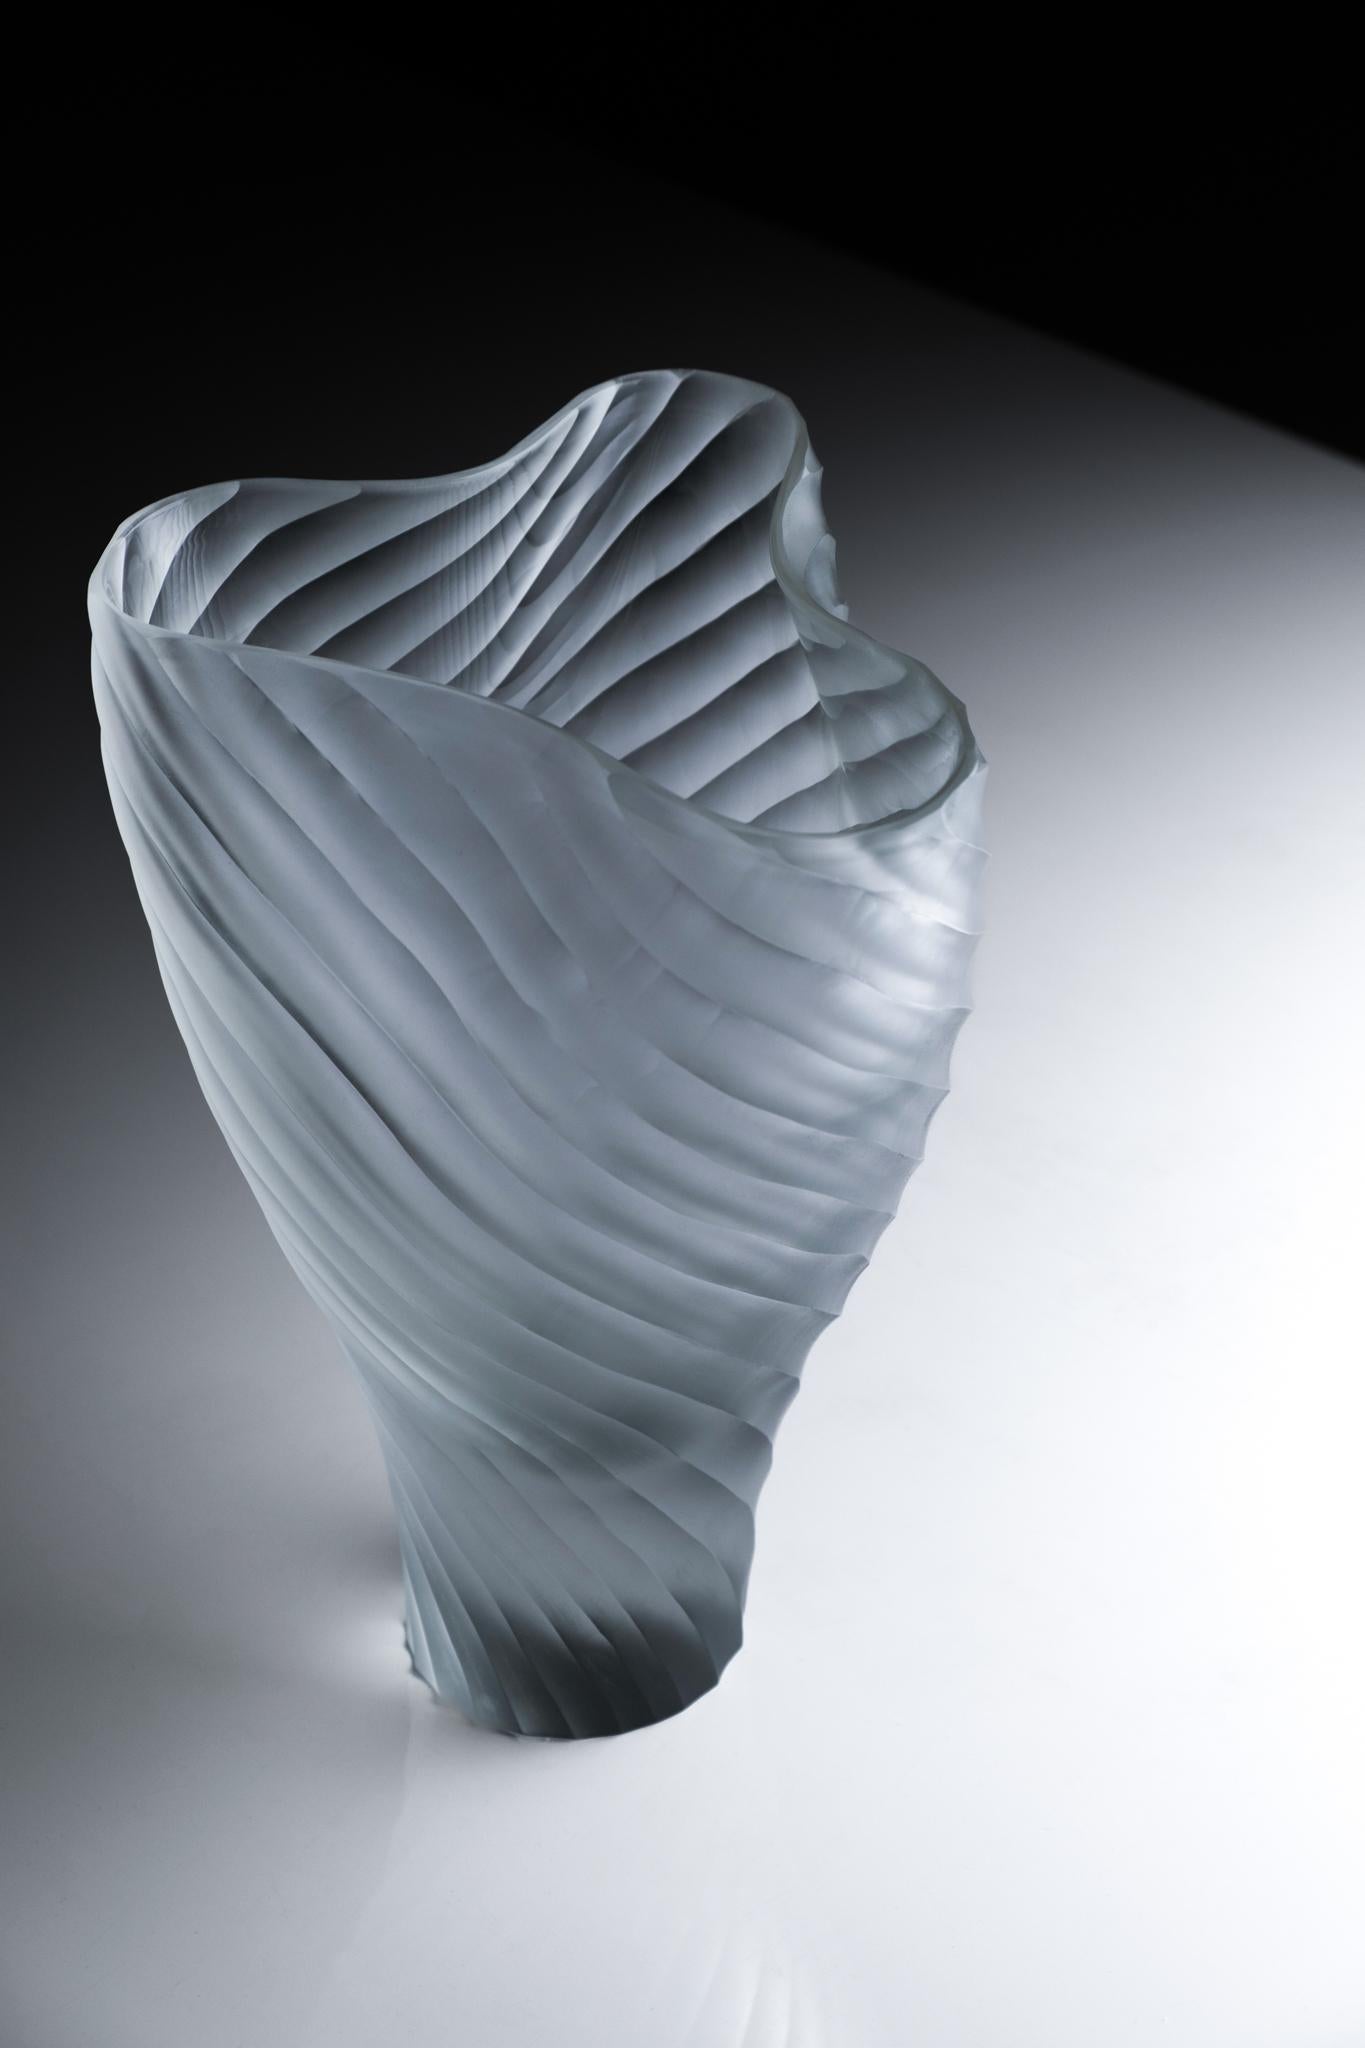 Mascareta est un vase de la Collection Laguna conçue par Ludovica+Roberto Palomba pour Purho au printemps 2022. 
Caractérisé par des formes généreuses aux bords supérieurs repliés et une base épaisse en verre transparent, Mascareta - dont le nom